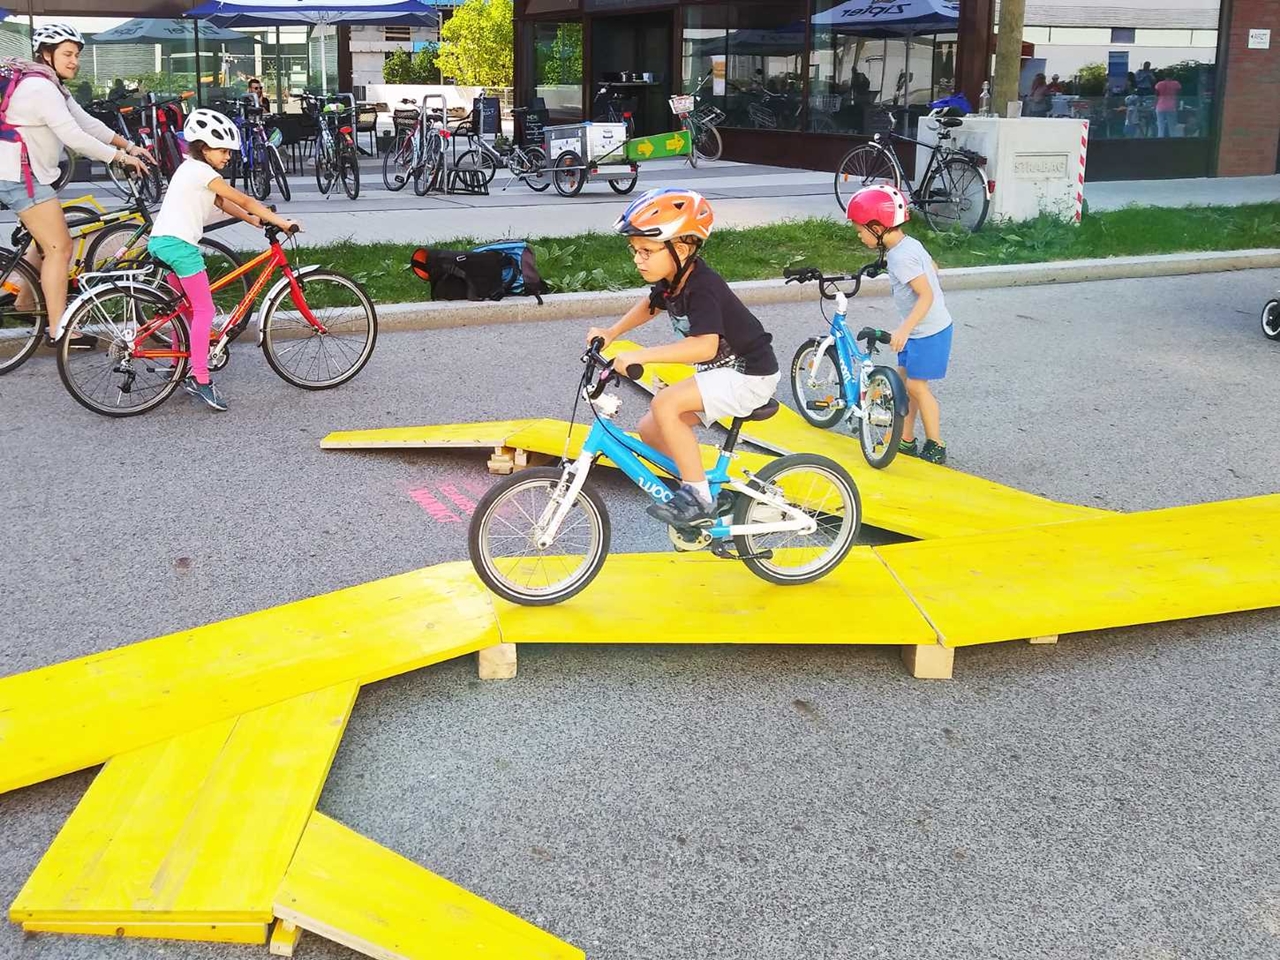 Biciklis játszótér épül Bécsben, ahol a gyerekek ügyességi feladatok során sajátíthatják el a biztonságos közlekedést. A felvételen a játszótér prototípusának egy részlete látható